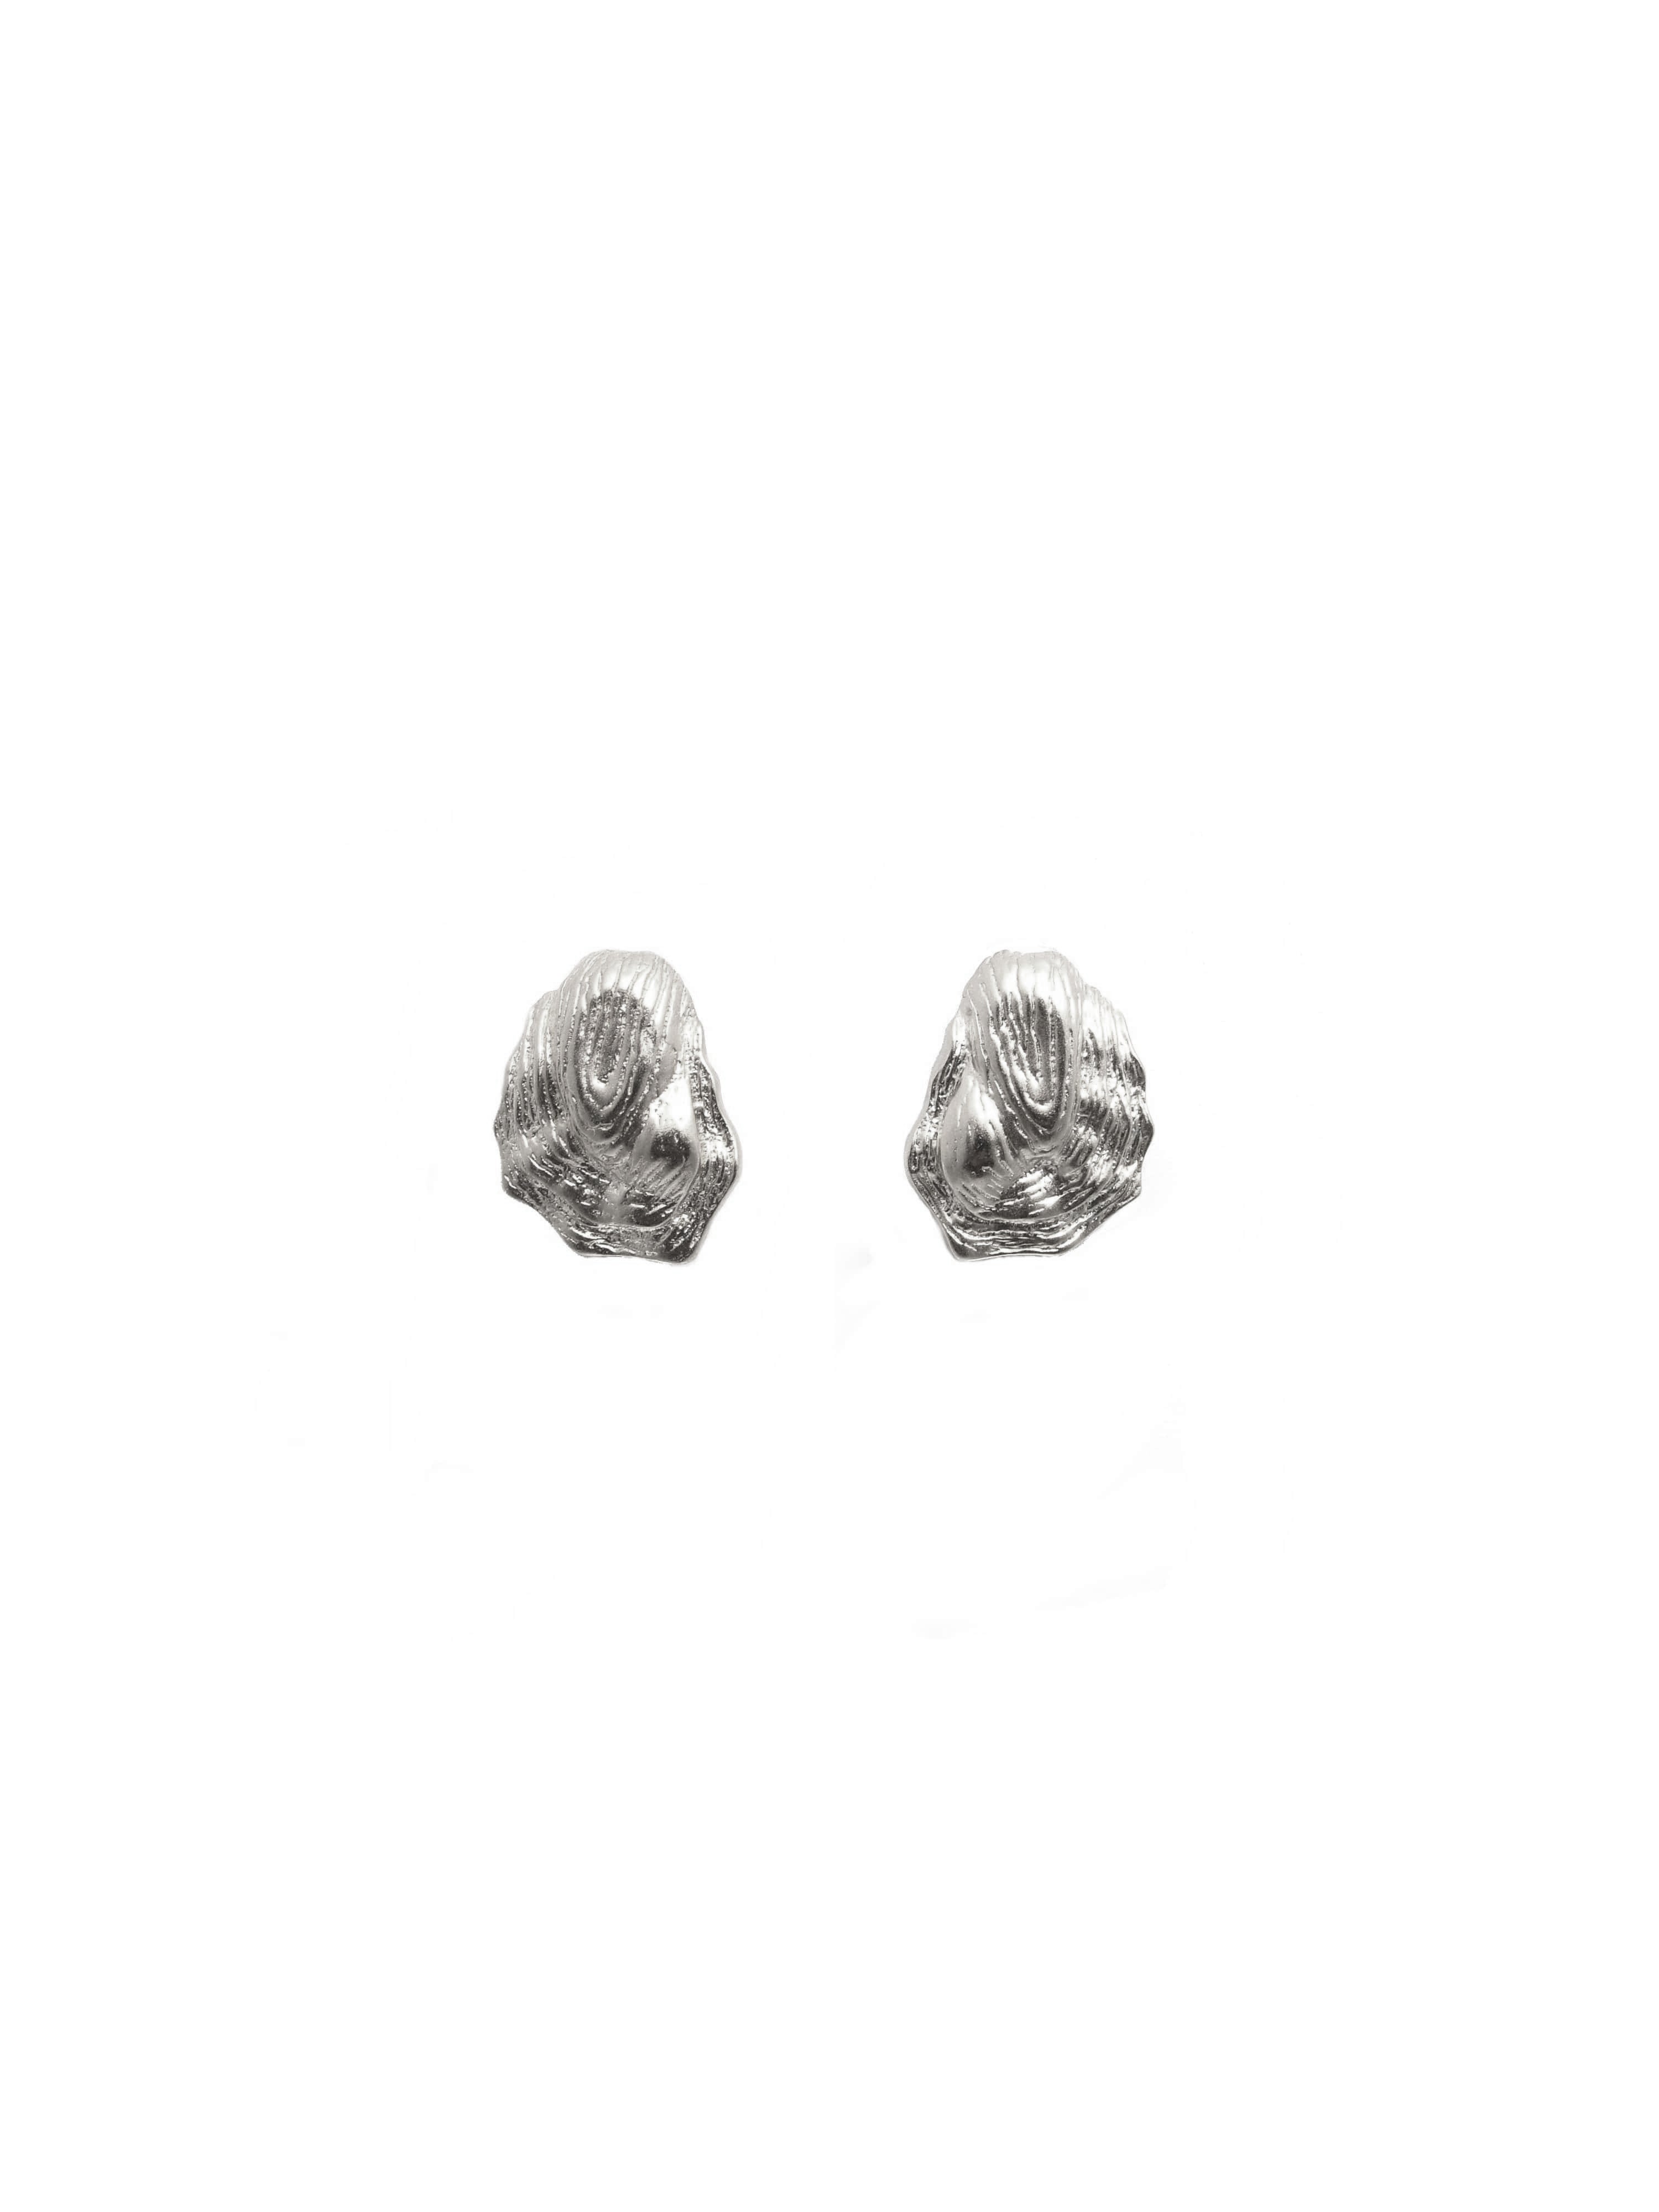 Capers Earrings in Silver